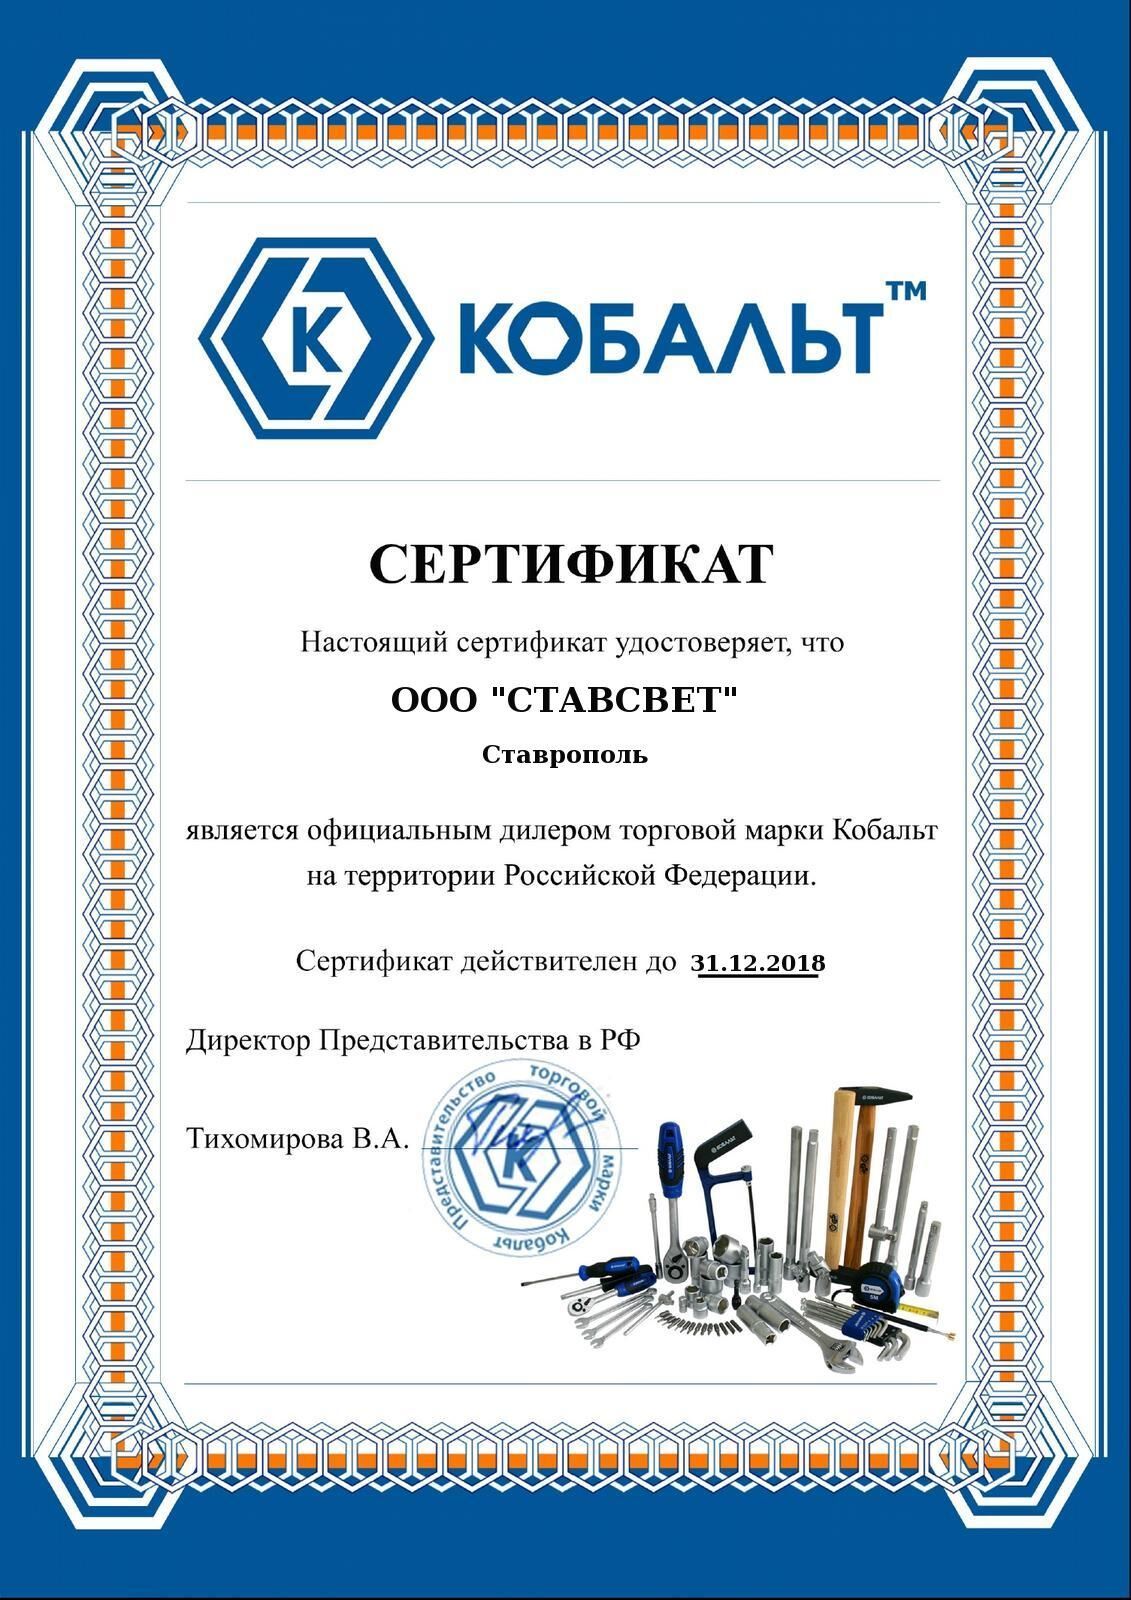 Сертификат дистрибьютора от компании «Кобальт»